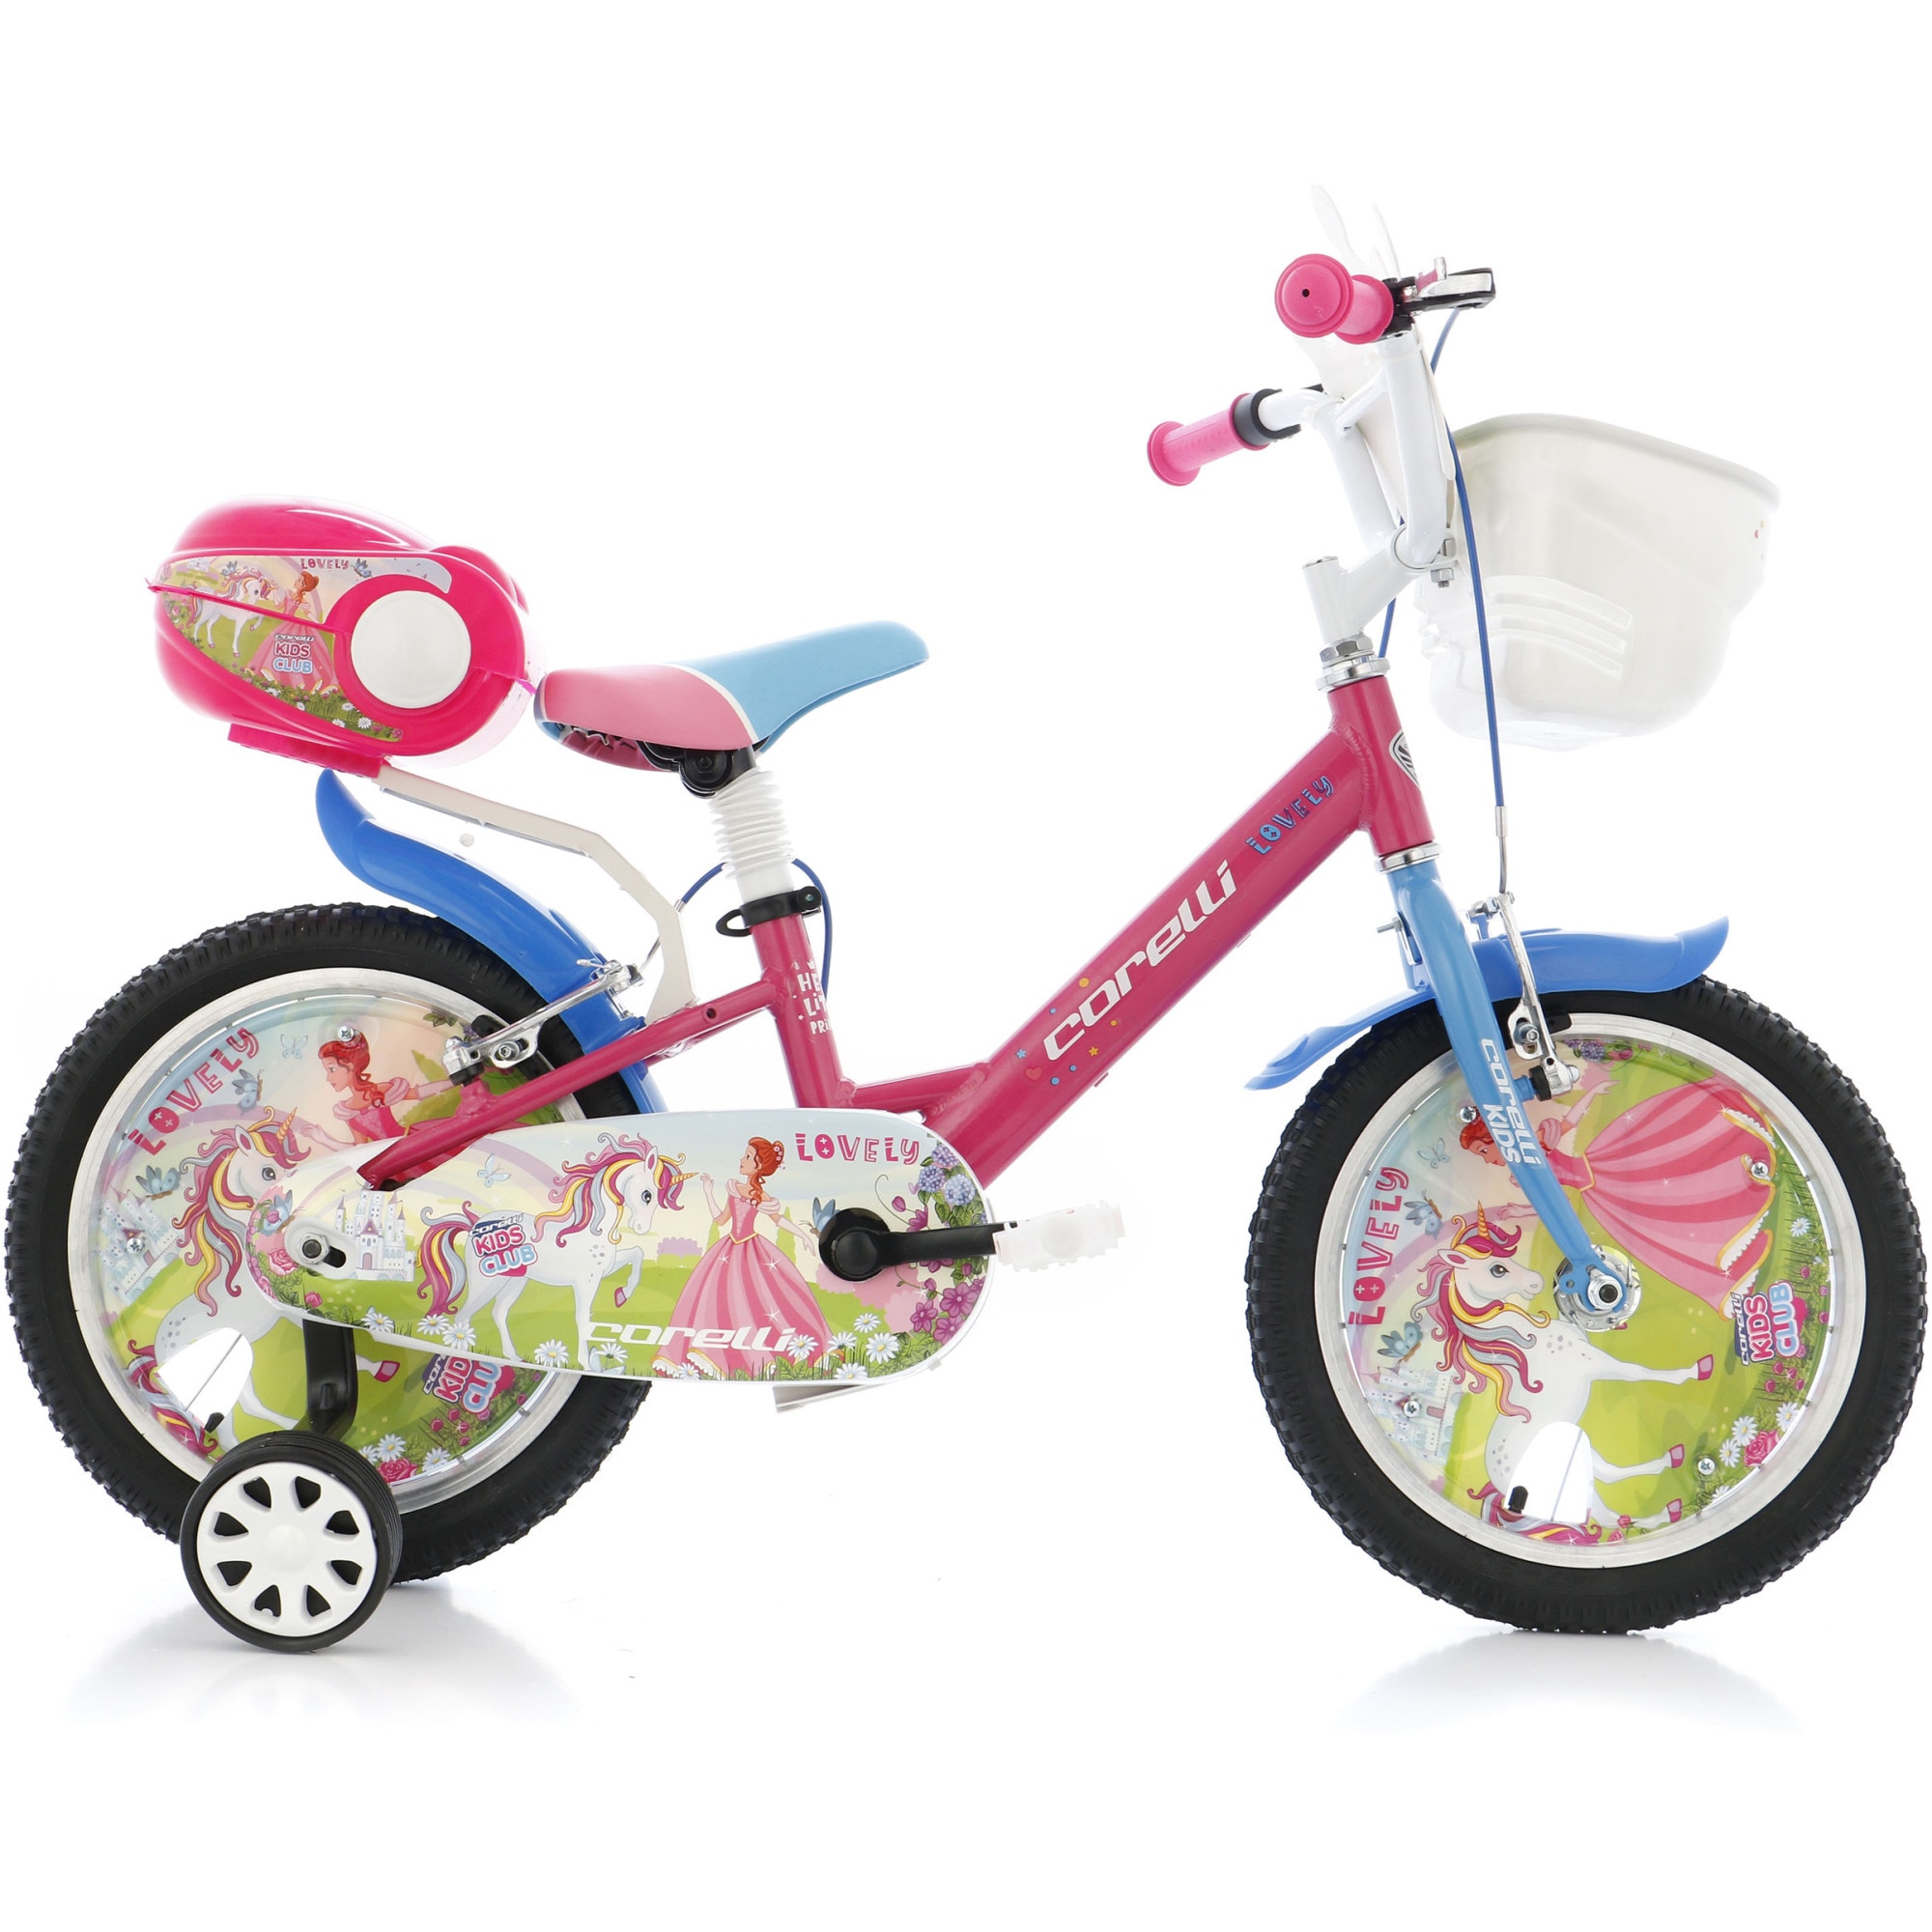 Fotografie Bicicleta copii Corelli Lovely 16", single-speed, culoare roz-albastru, accesorii incluse